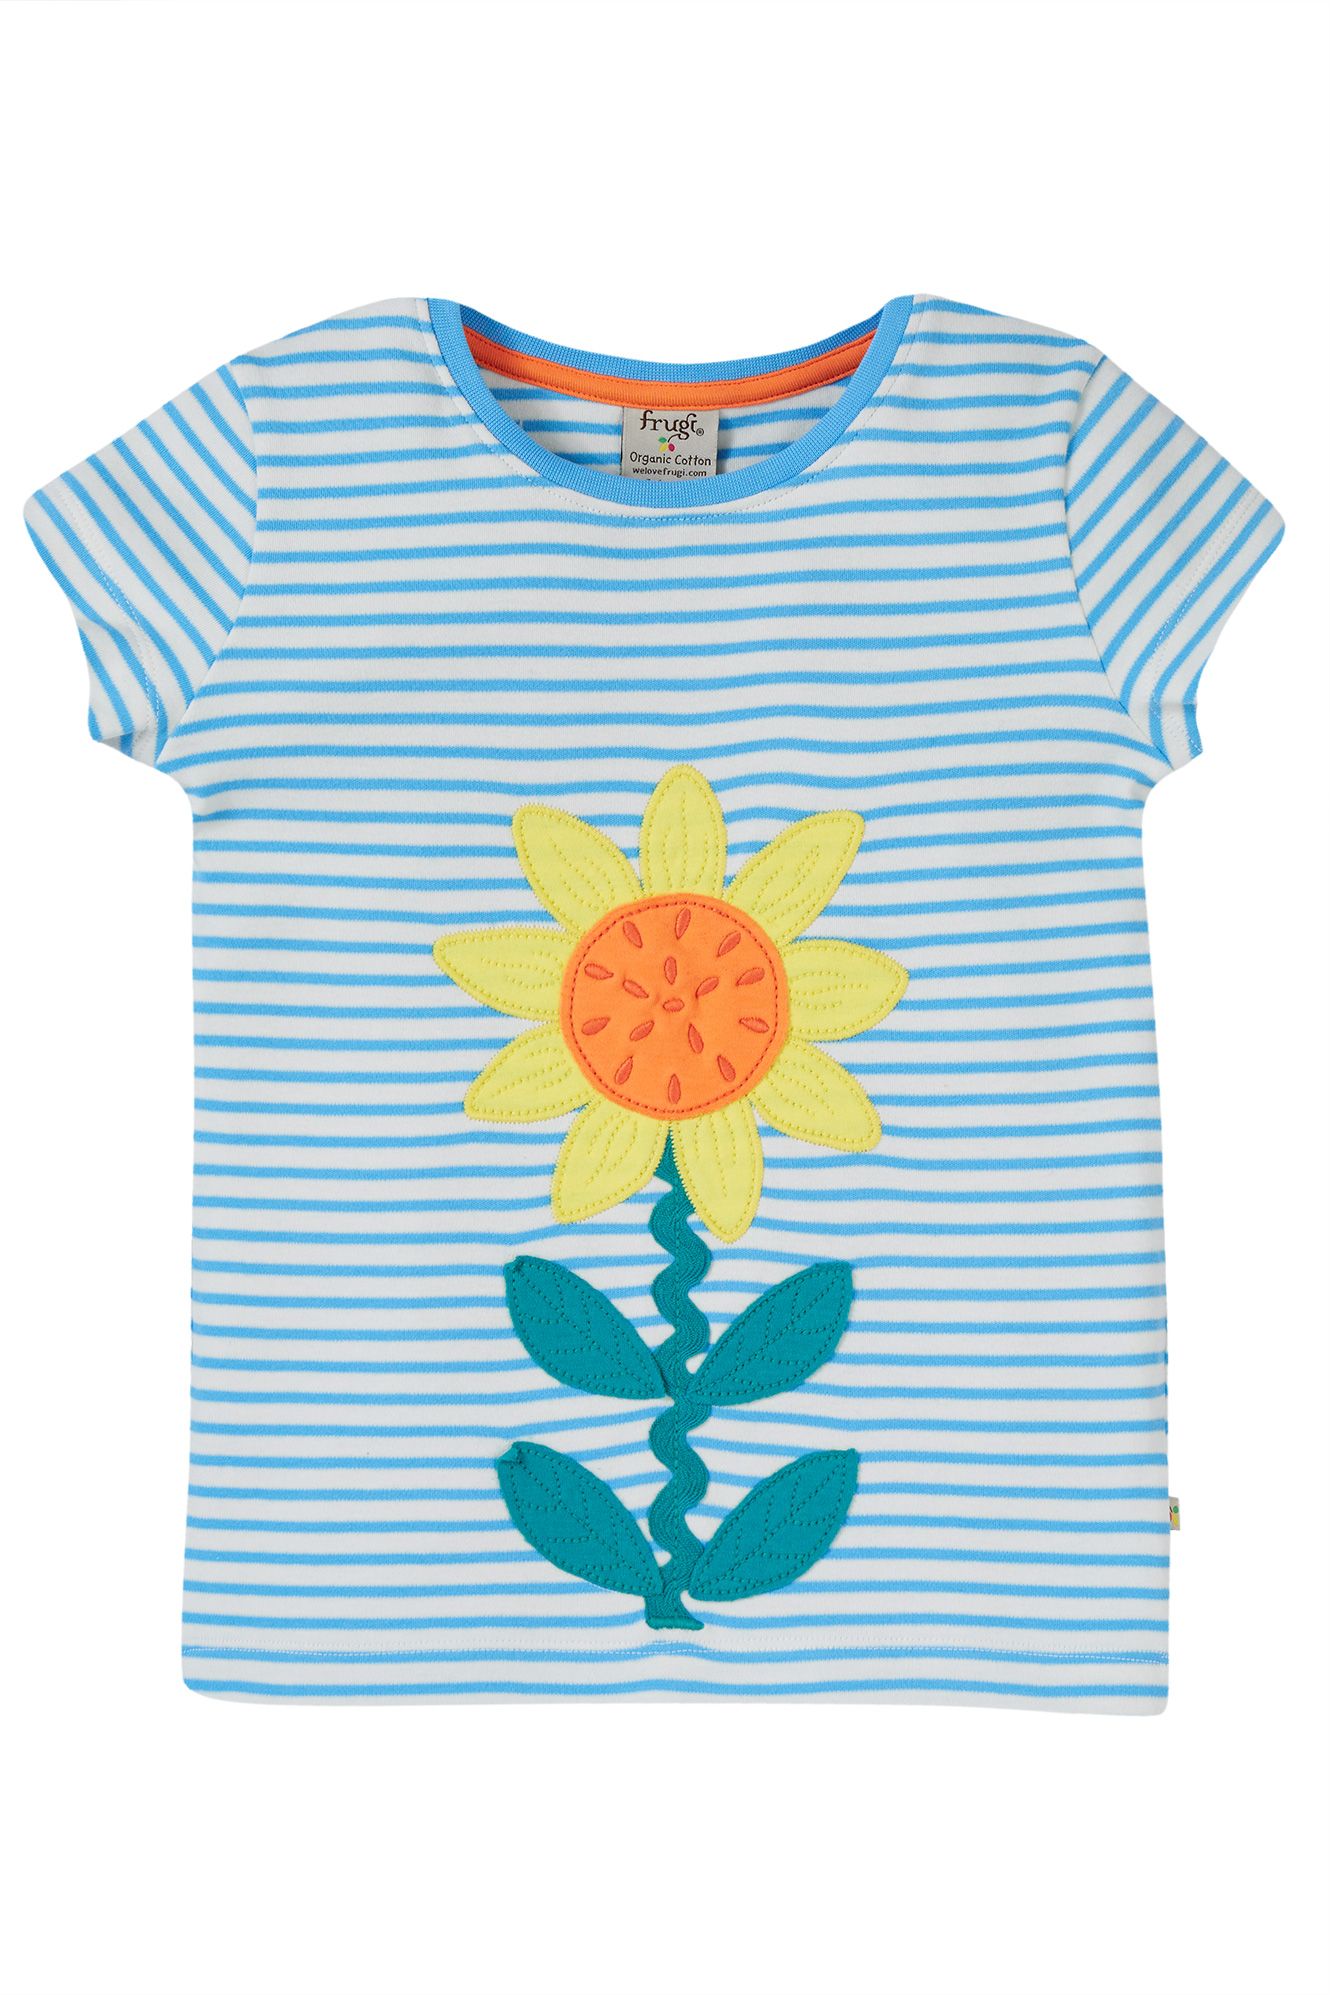 Frugi Camille Applique T-shirt, Beluga Blue Stripe/Echinacea